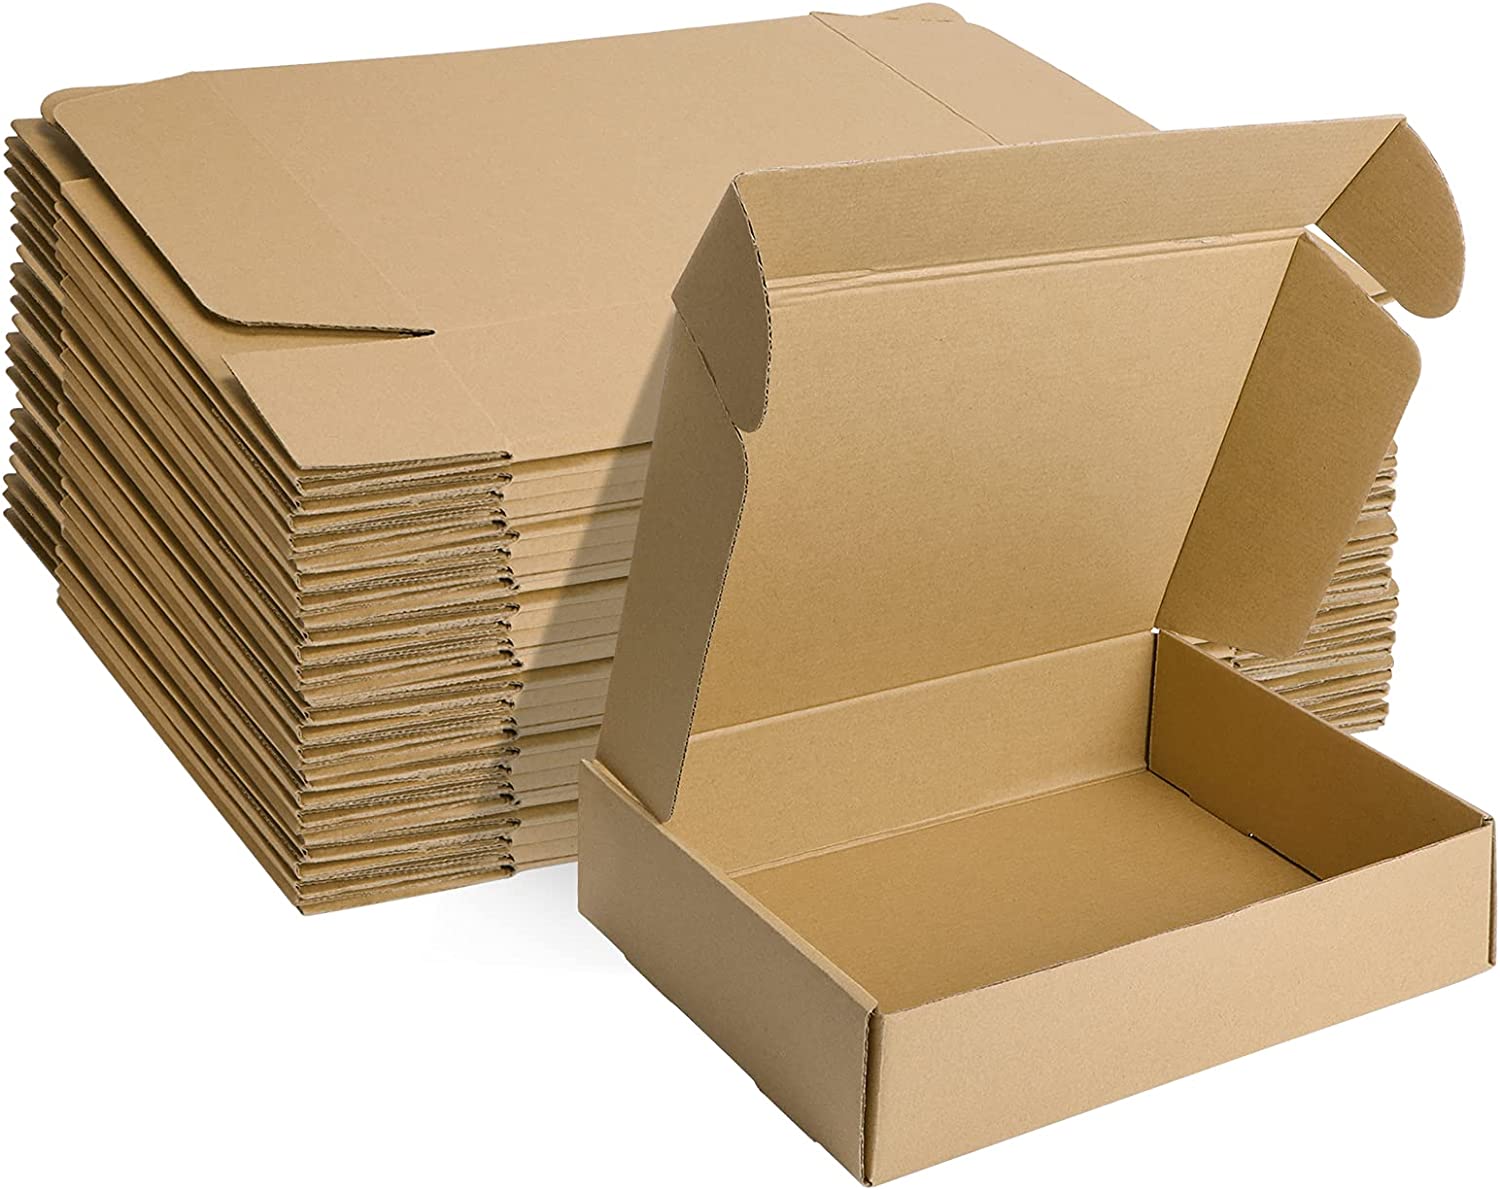 Почему стоит покупать картонные коробки оптом